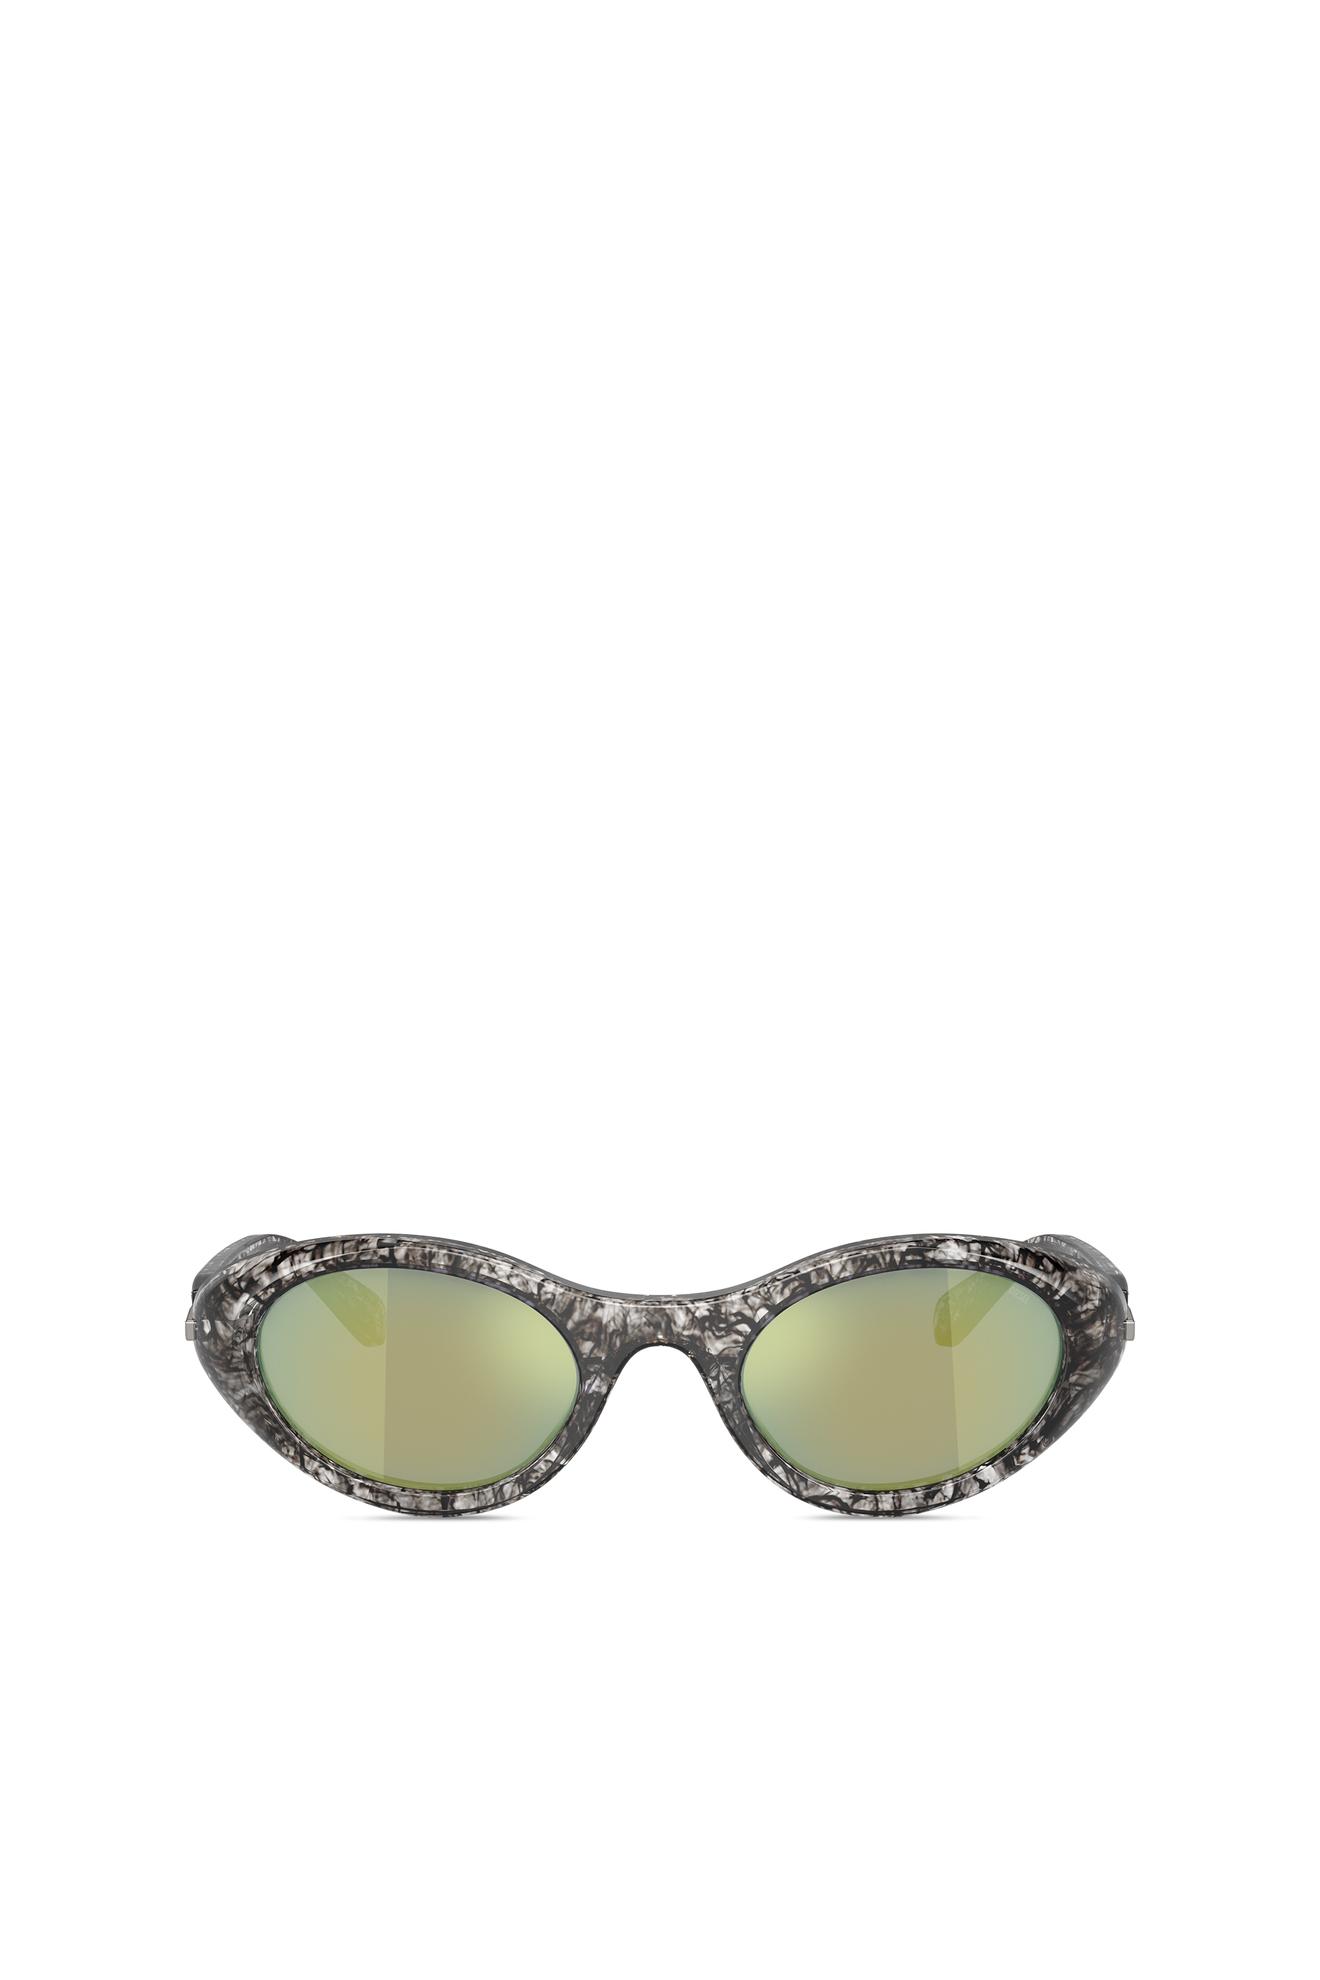 Προσφορά Wrap-around shape sunglasses για 195€ σε DIESEL